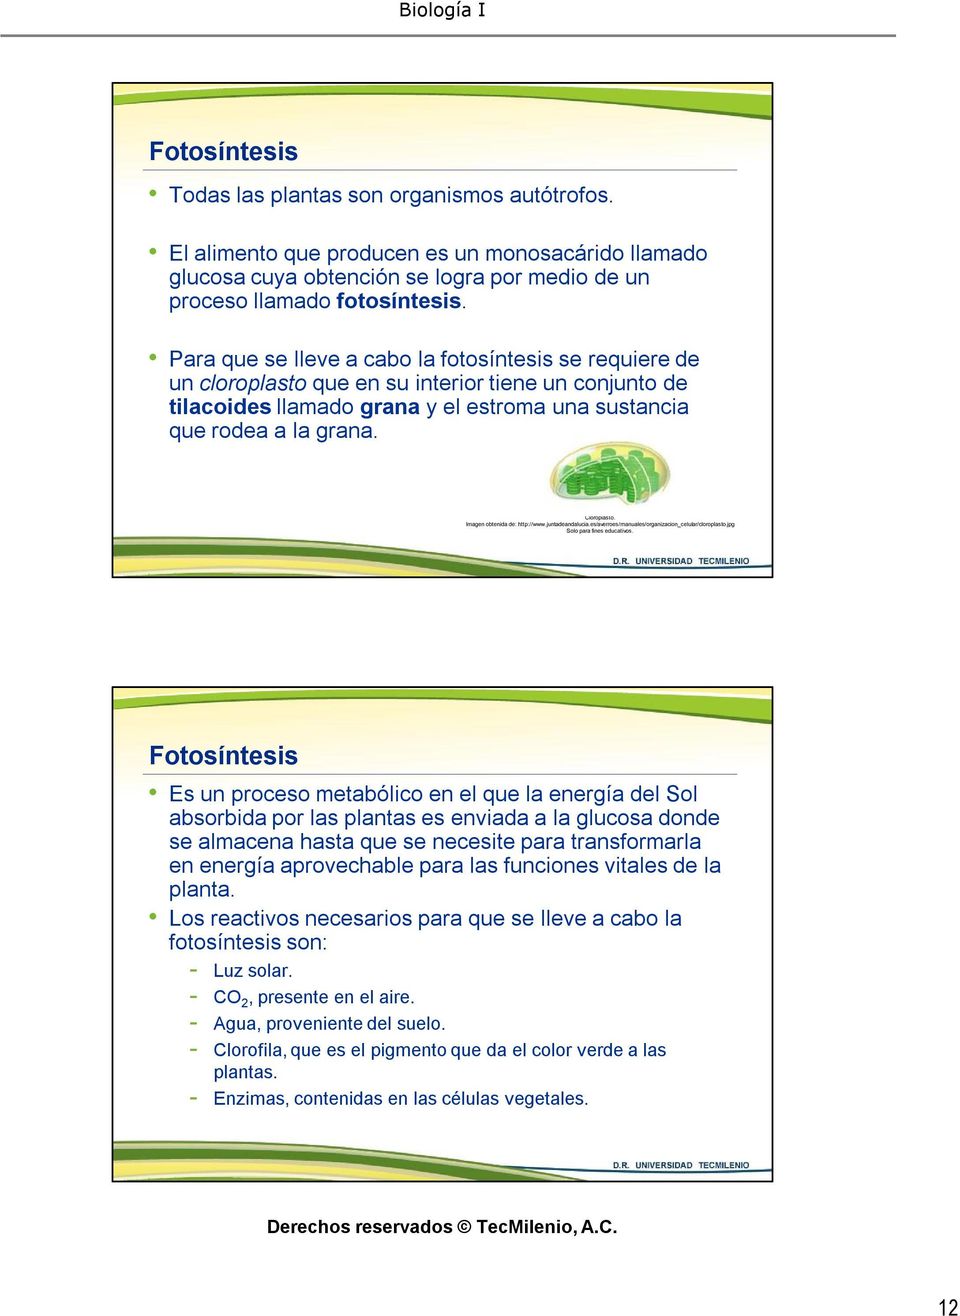 Imagen obtenida de: http://www.juntadeandalucia.es/averroes/manuales/organizacion_celular/cloroplasto.jpg Solo para fines educativos.